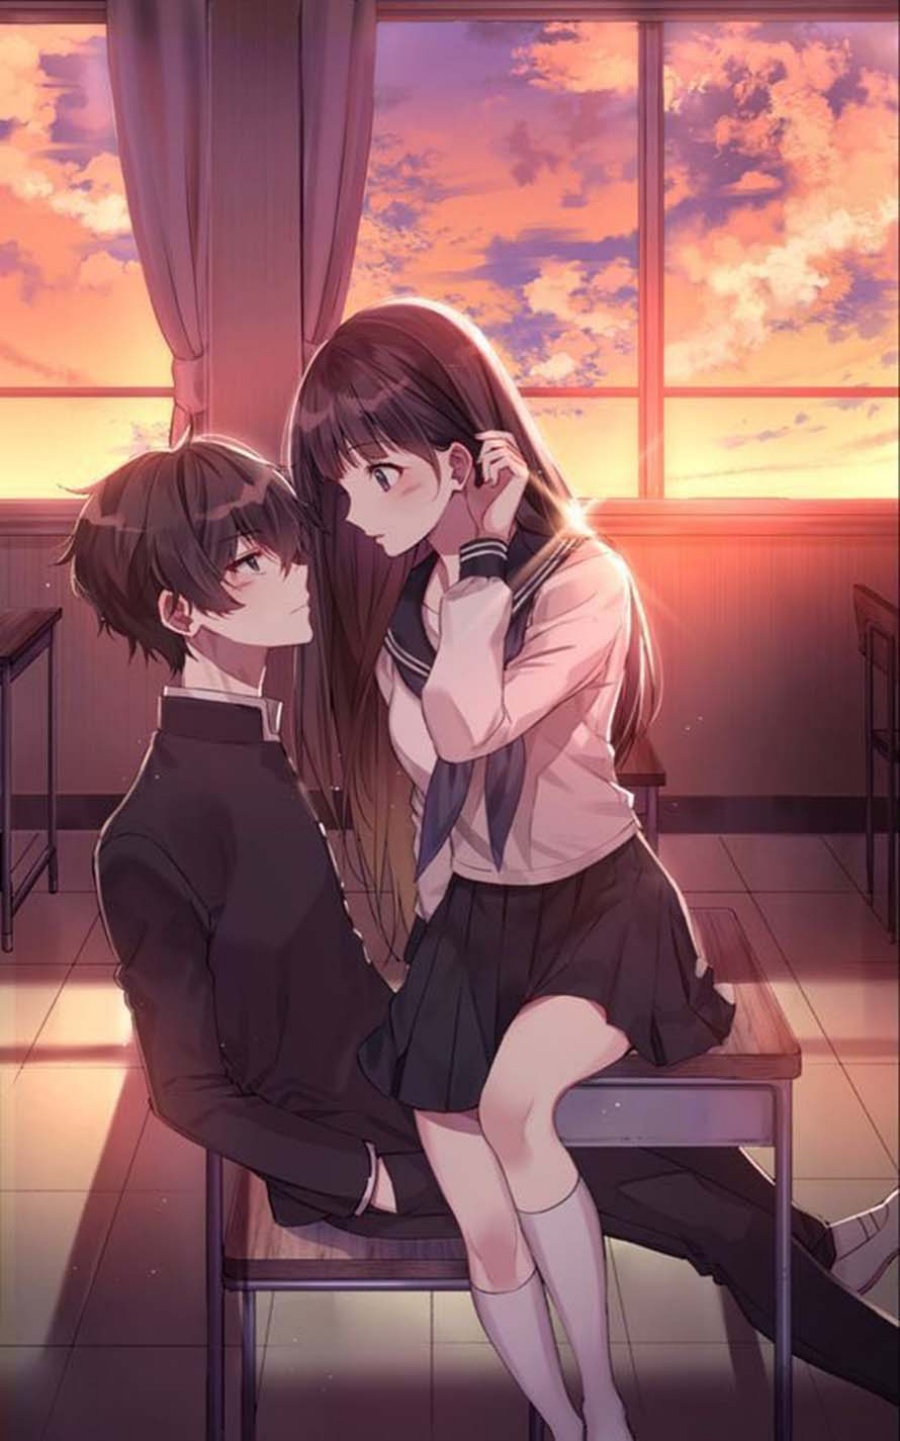 Hãy cùng chiêm ngưỡng bức ảnh anime đầy tình yêu của một cặp đôi đáng yêu nhất. Họ đang yêu nhau ngọt ngào đến nỗi không thể rời mắt được!